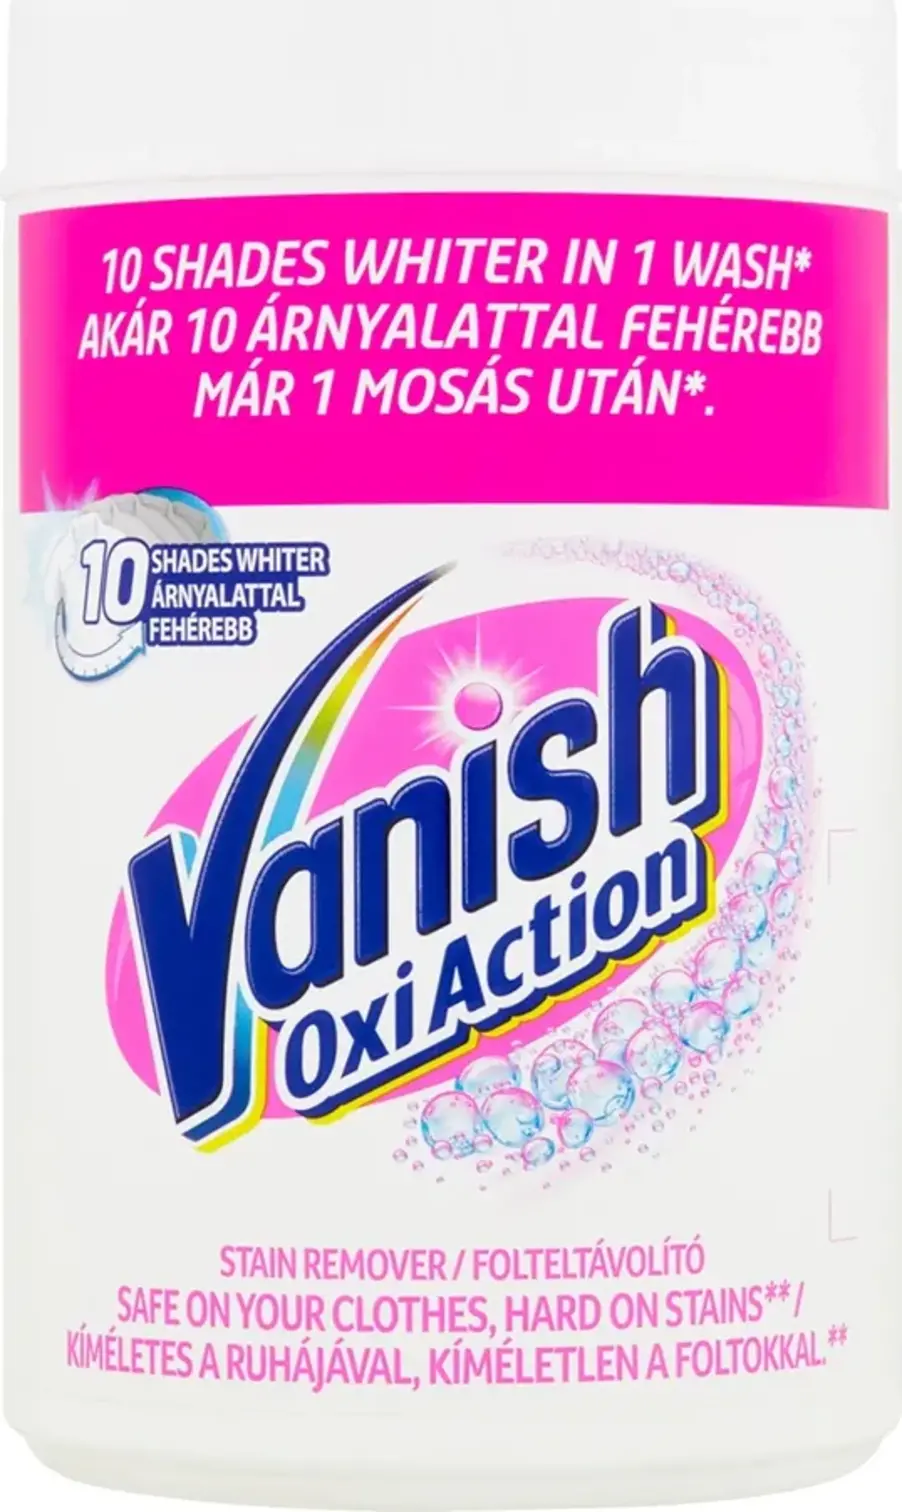 Vanish Oxi Action prášek na bělení a odstranění skvrn 625 g